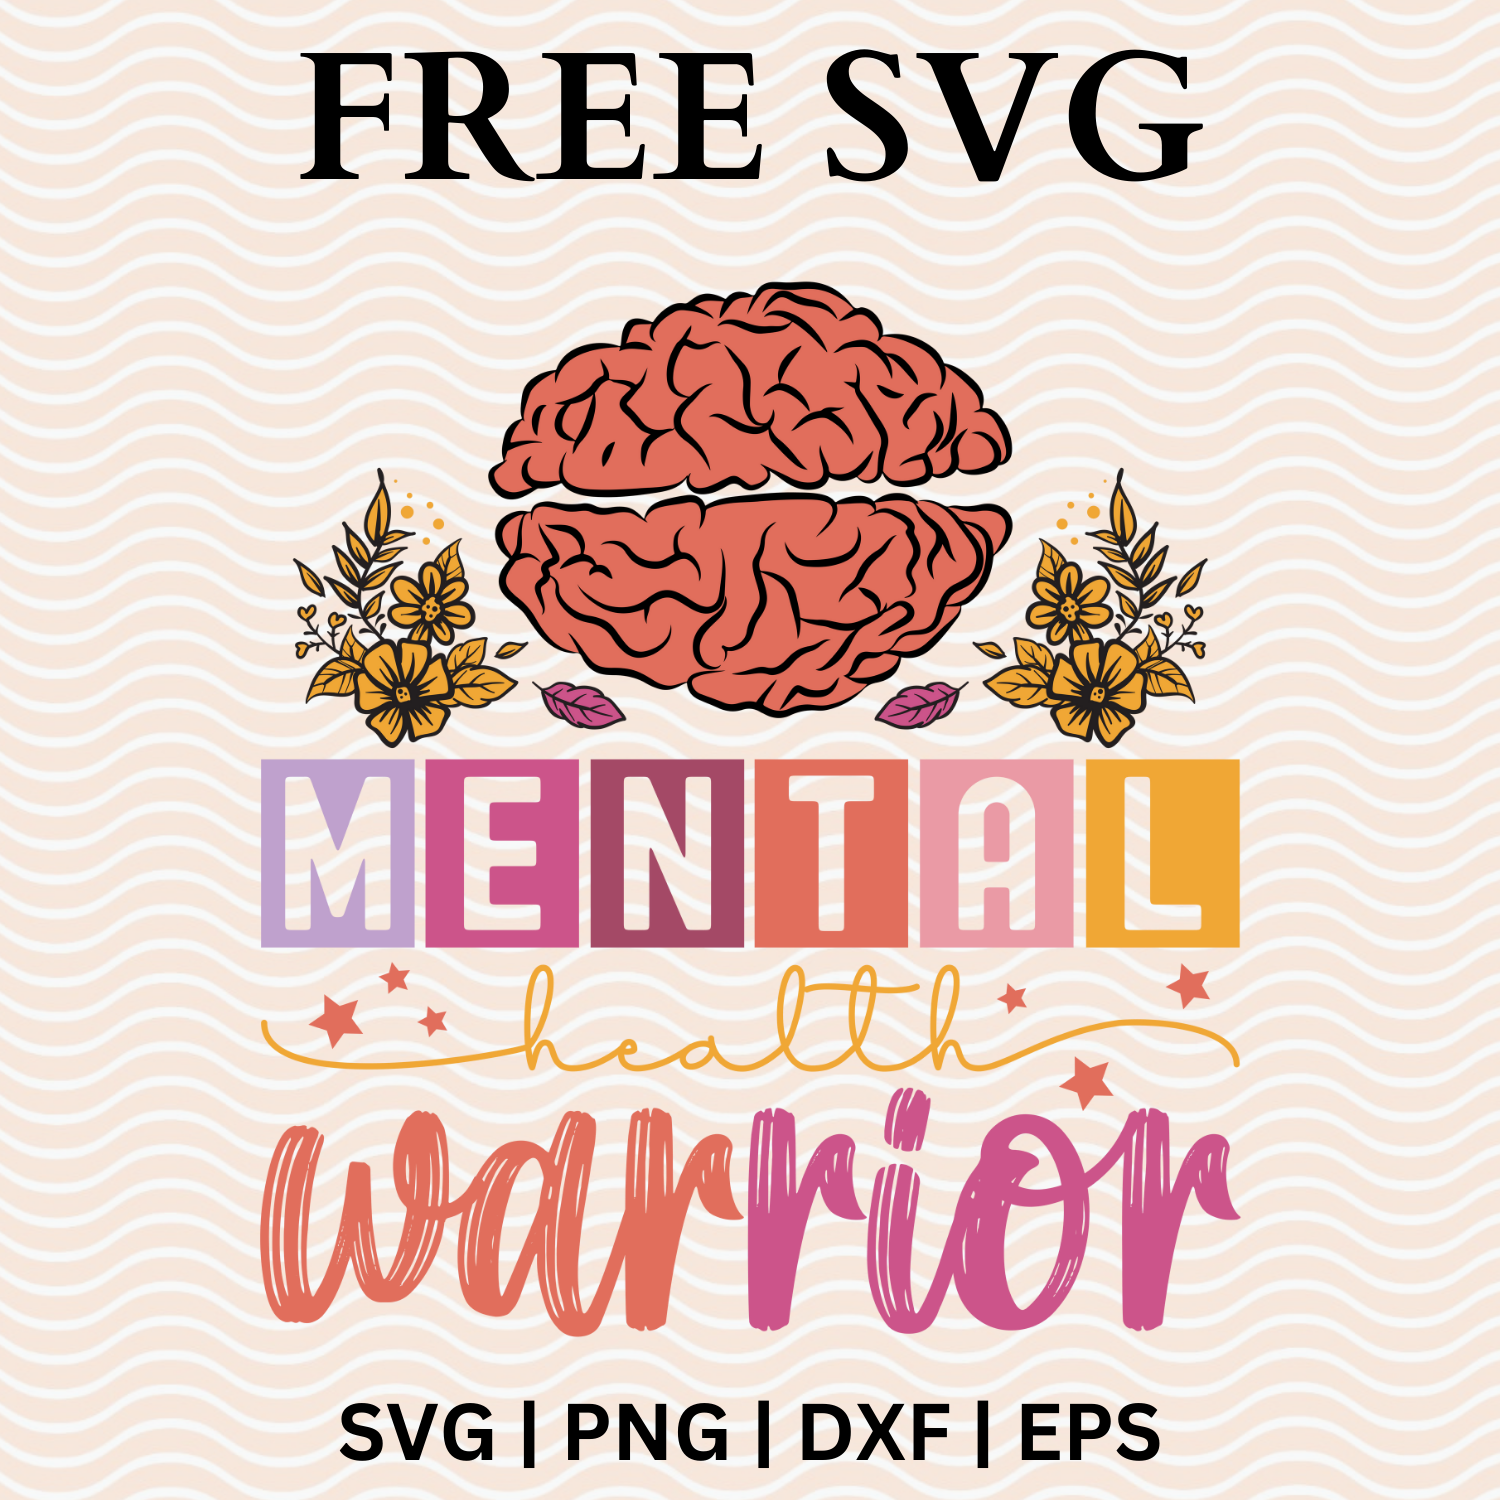 Mental Health Warrior SVG Free File For Cricut & PNG Download-8SVG